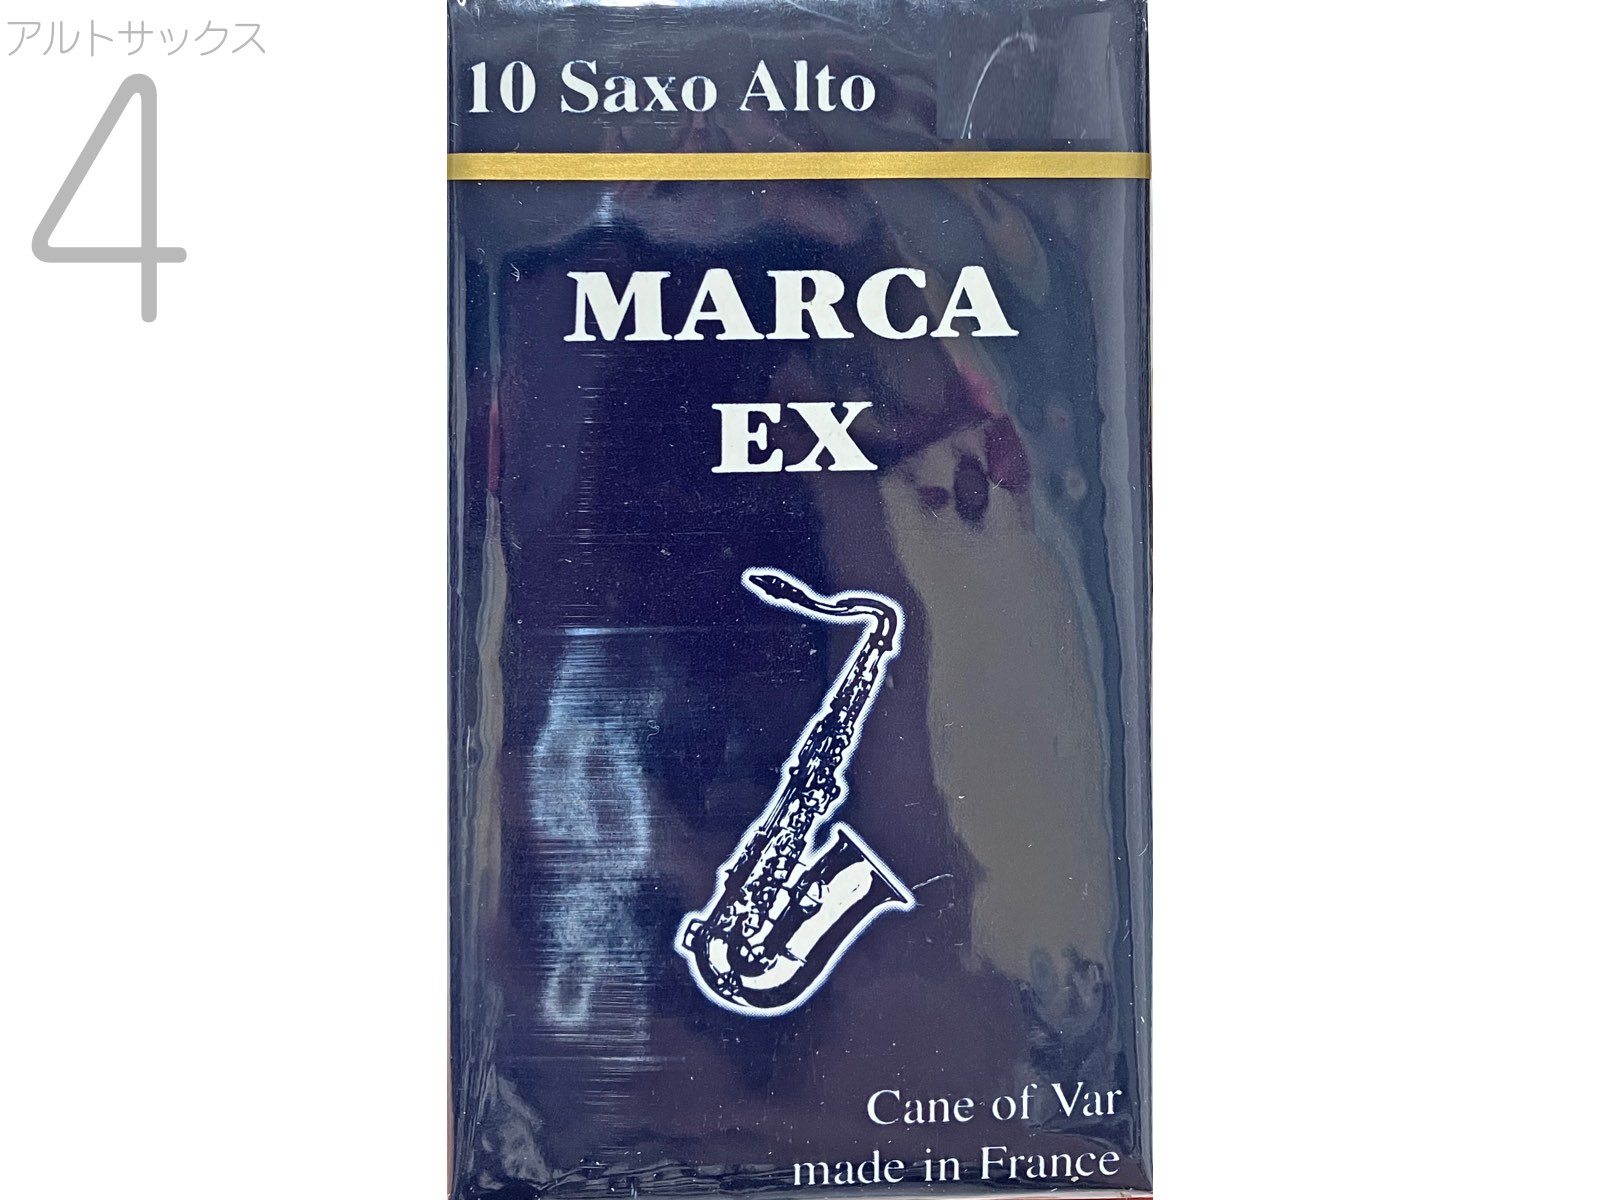 【メール便出荷品】 MARCA ( マーカ ) エクセル アルトサックス 4番 リード 10枚 1箱 EX Alto saxophone reed EXCEL 4.0 旧パケ 【北海道不可/沖縄不可/離島不可/同梱不可/代引き不可】